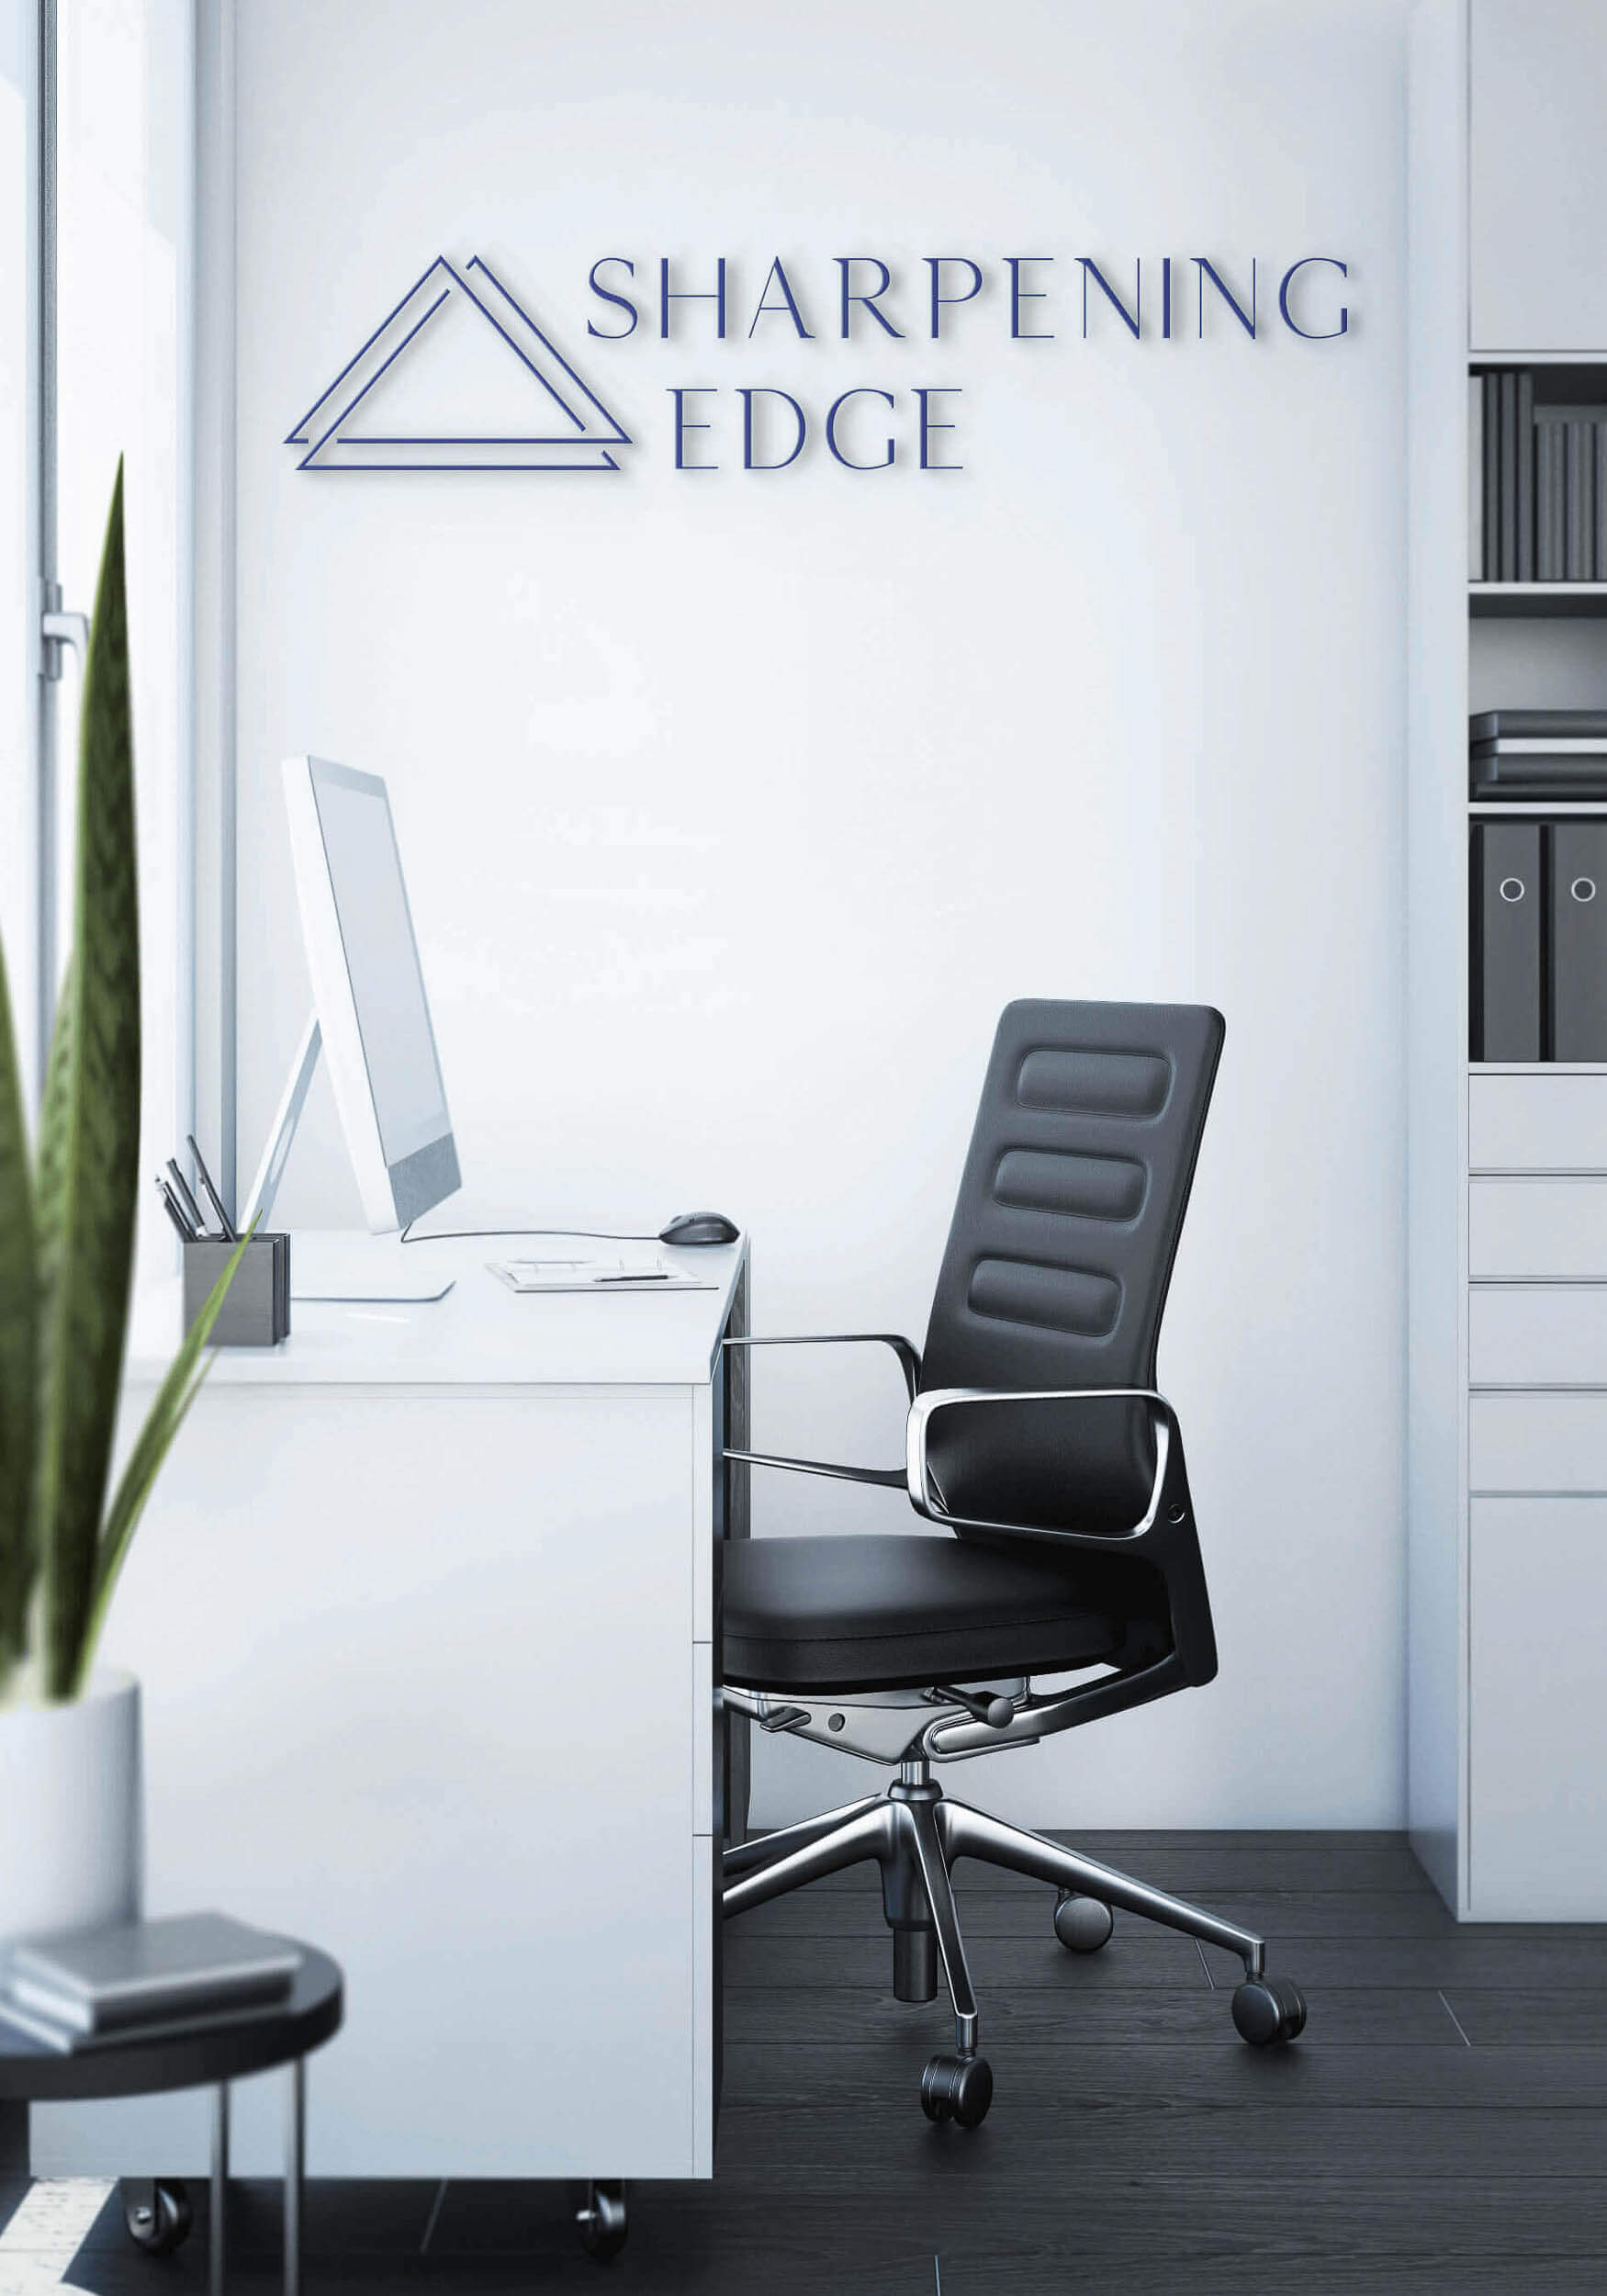 Das Logo von Sharpening Edge, auf einer Wand in einem Büro, das durch Kommunikationsdesign entstand